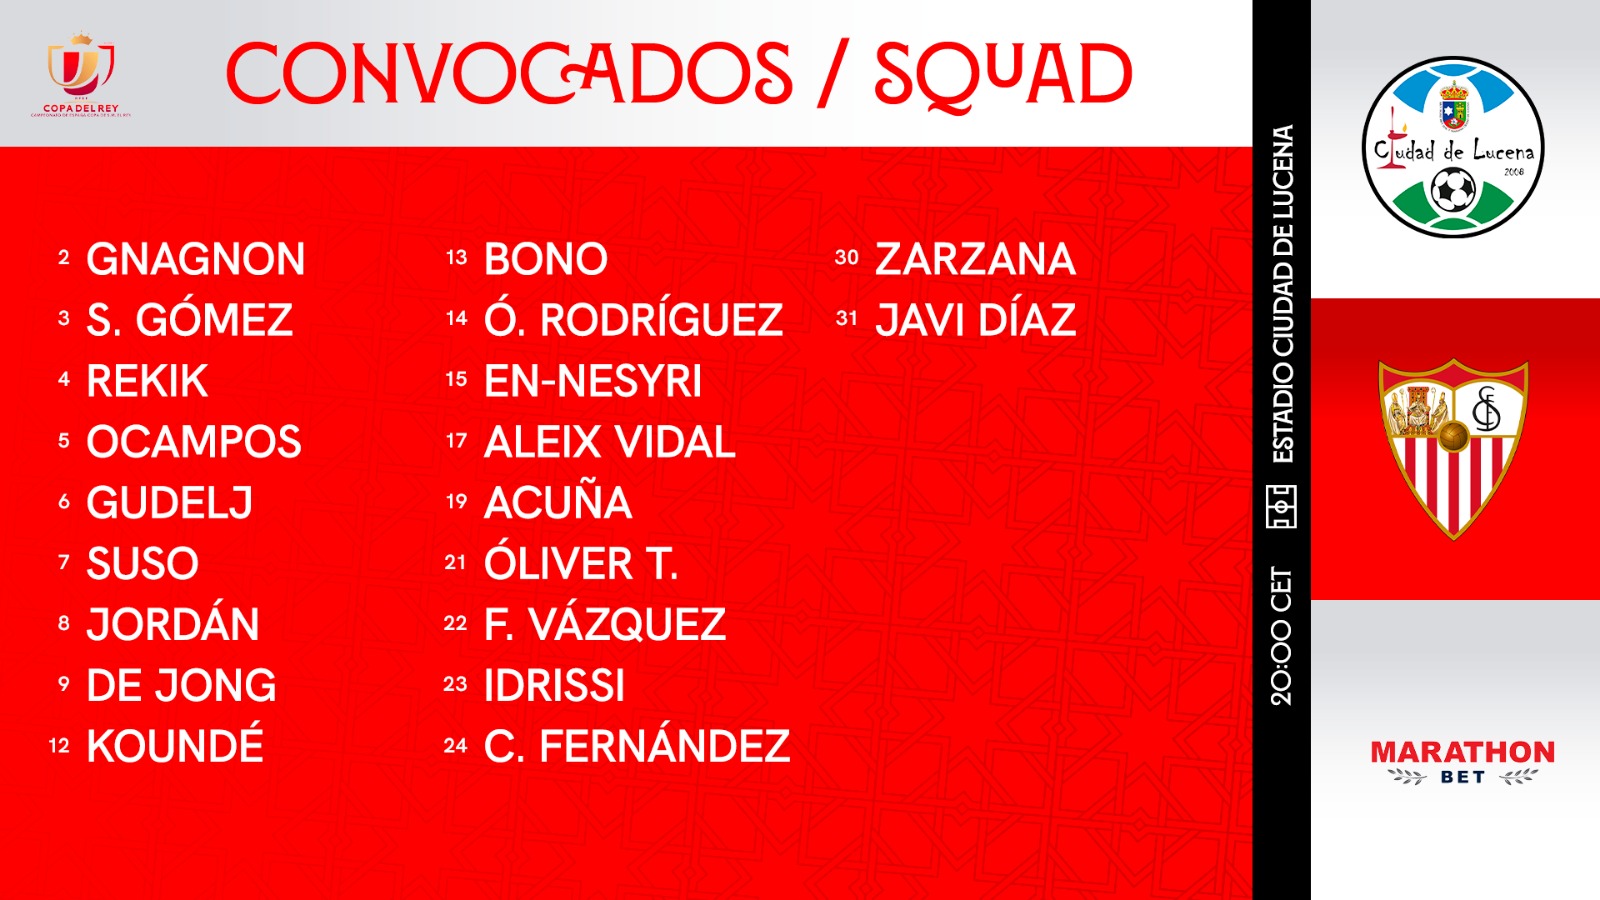 Squad for Ciudad de Lucena-Sevilla FC